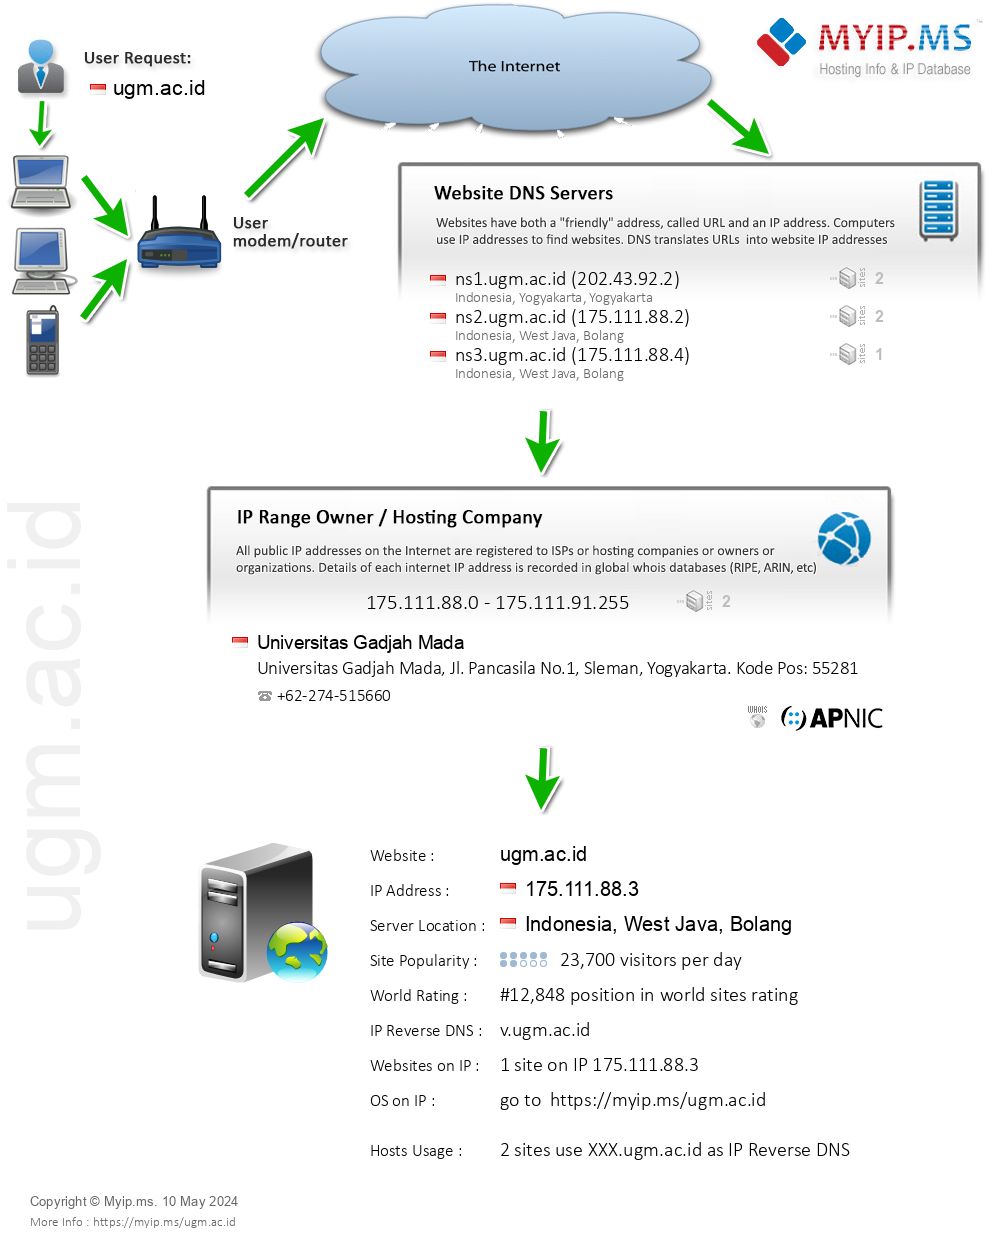 Ugm.ac.id - Website Hosting Visual IP Diagram